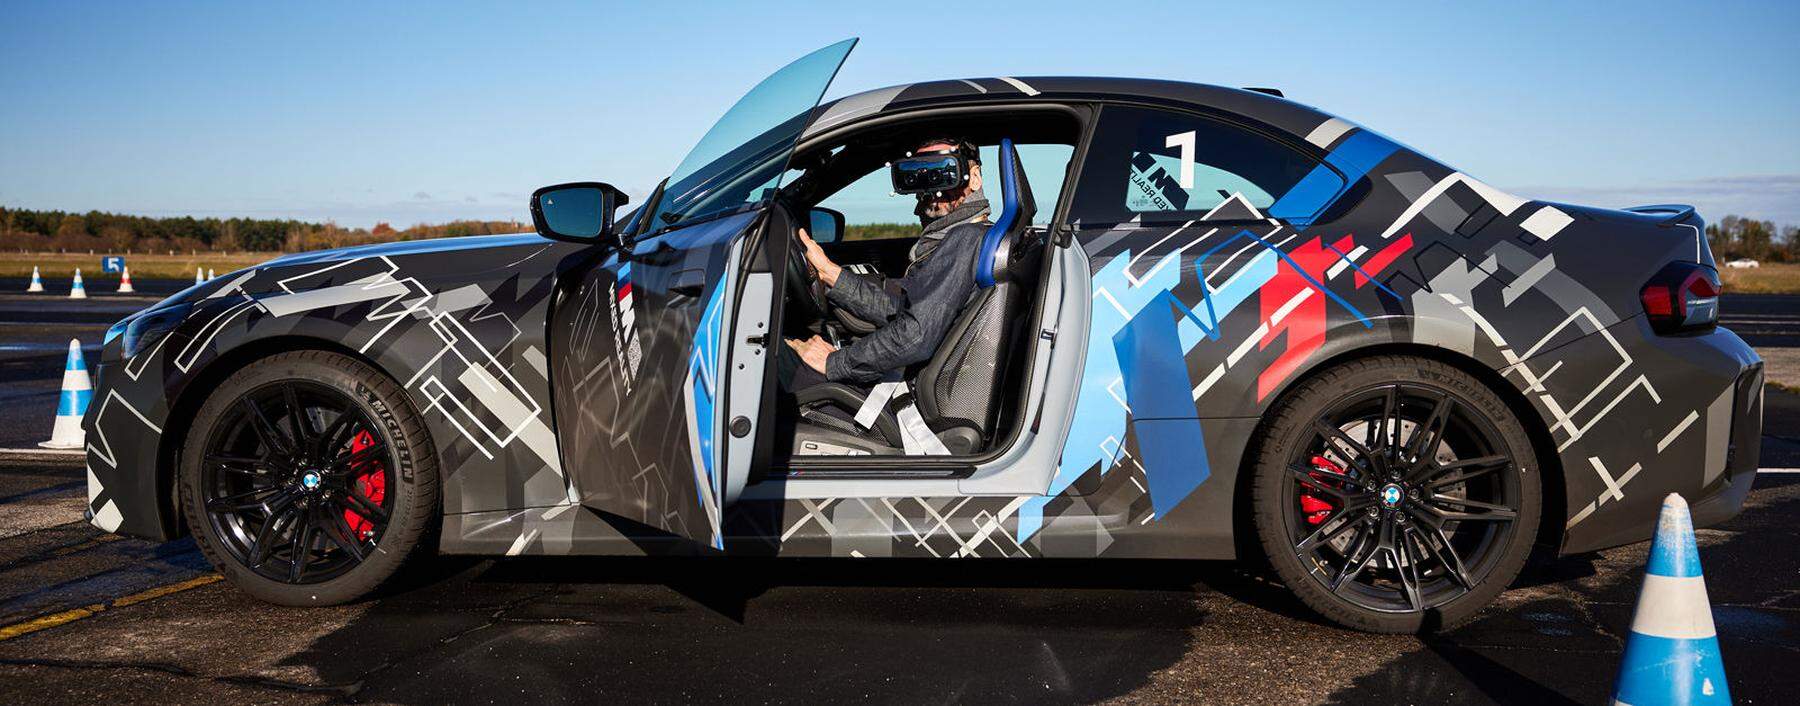 Brett vorm Kopf: Der Fahrer ist per VR-Brille in einer anderen, einer virtuellen Welt unterwegs. Aber gefahren wird real.